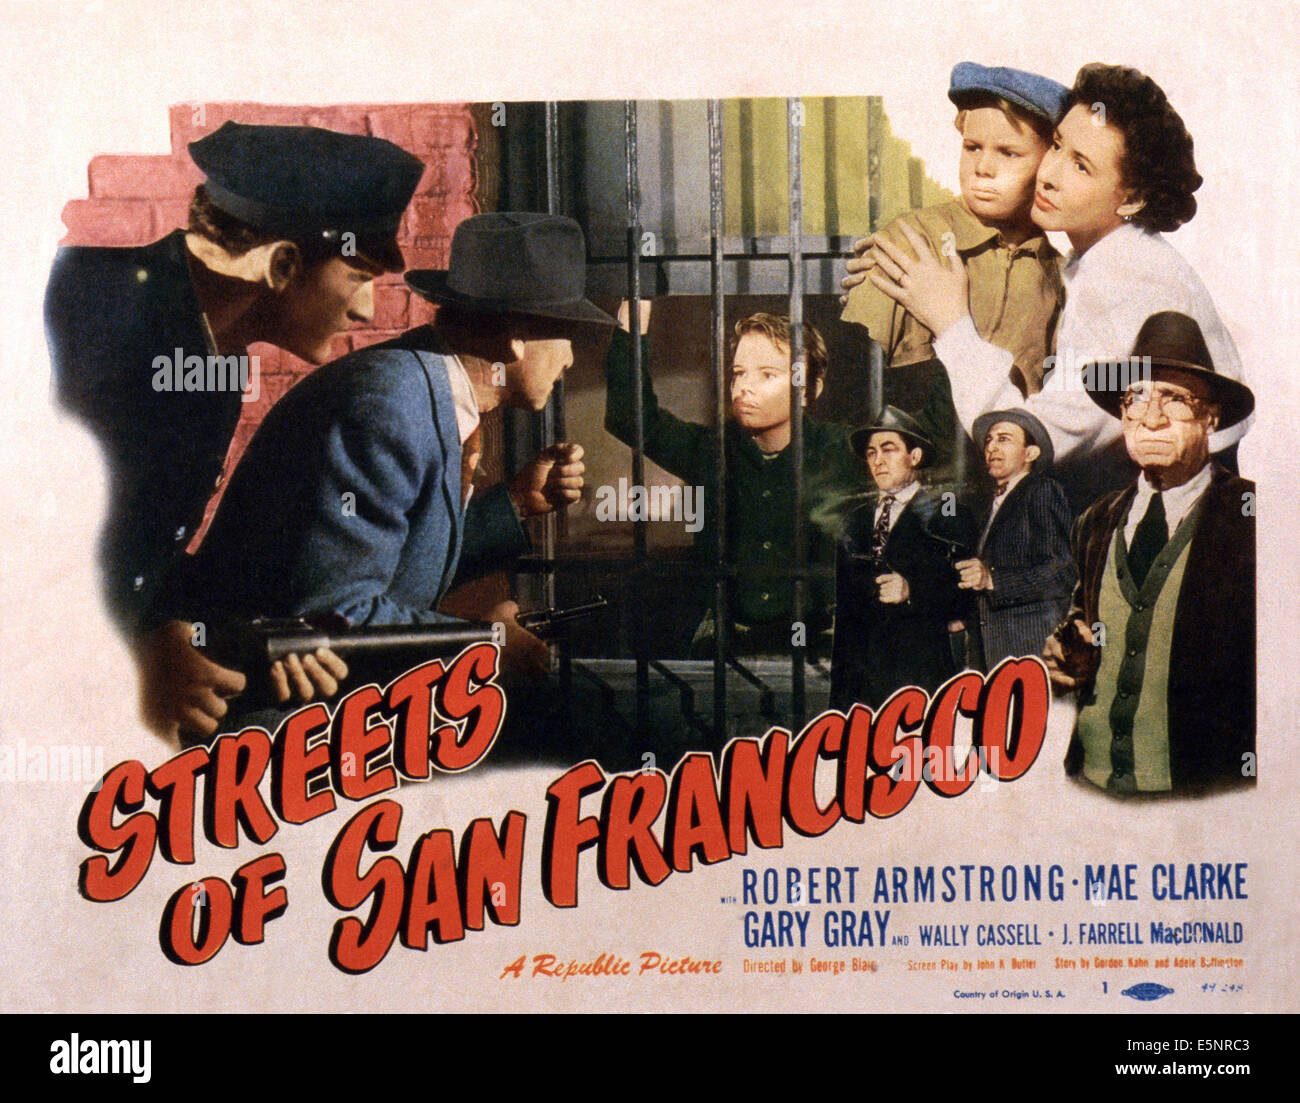 STREETS OF SAN FRANCISCO, US lobbycard, top right: Gary Gray, Mae Clarke; bottom right: J. Farrell MacDonald, 1949 Stock Photo